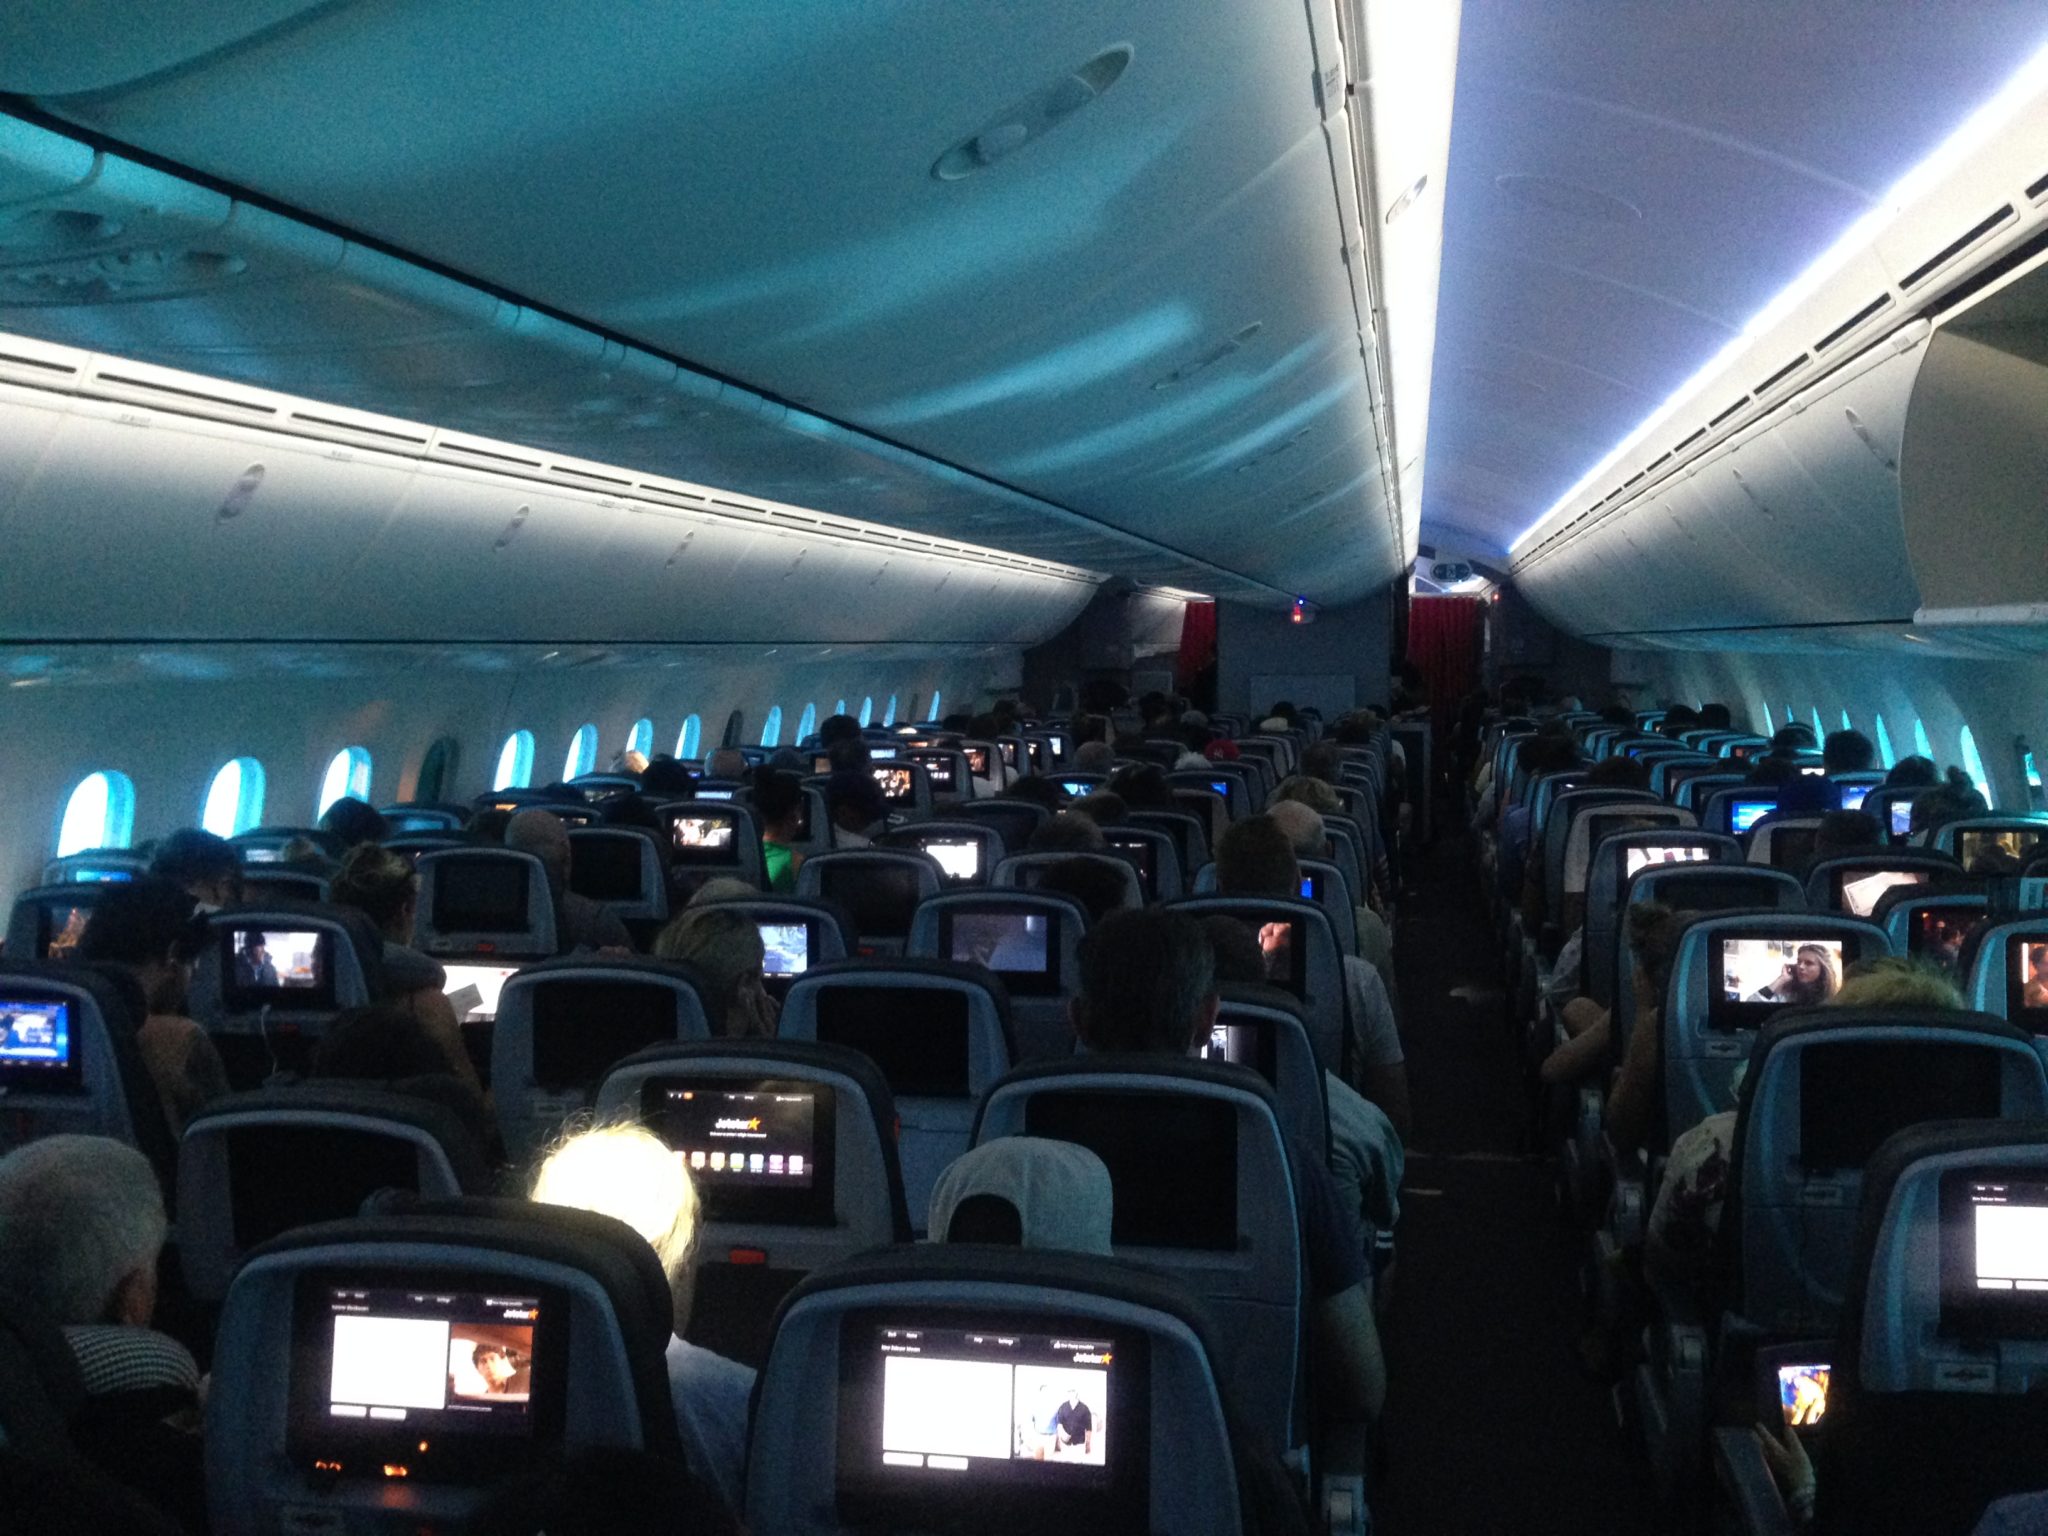 The Jetstar Dreamliner experience!